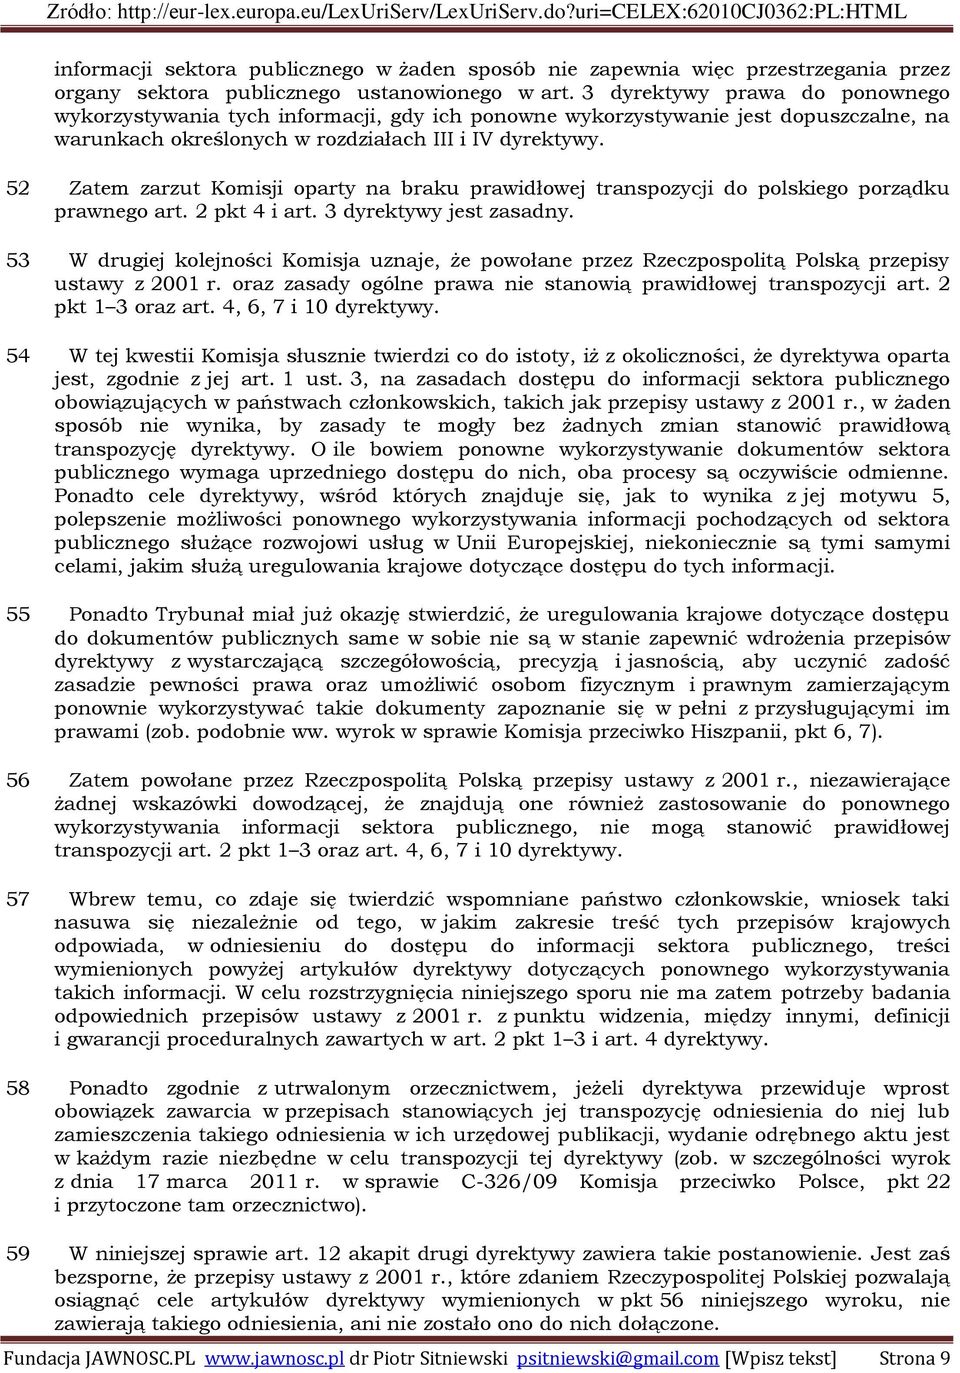 52 Zatem zarzut Komisji oparty na braku prawidłowej transpozycji do polskiego porządku prawnego art. 2 pkt 4 i art. 3 dyrektywy jest zasadny.